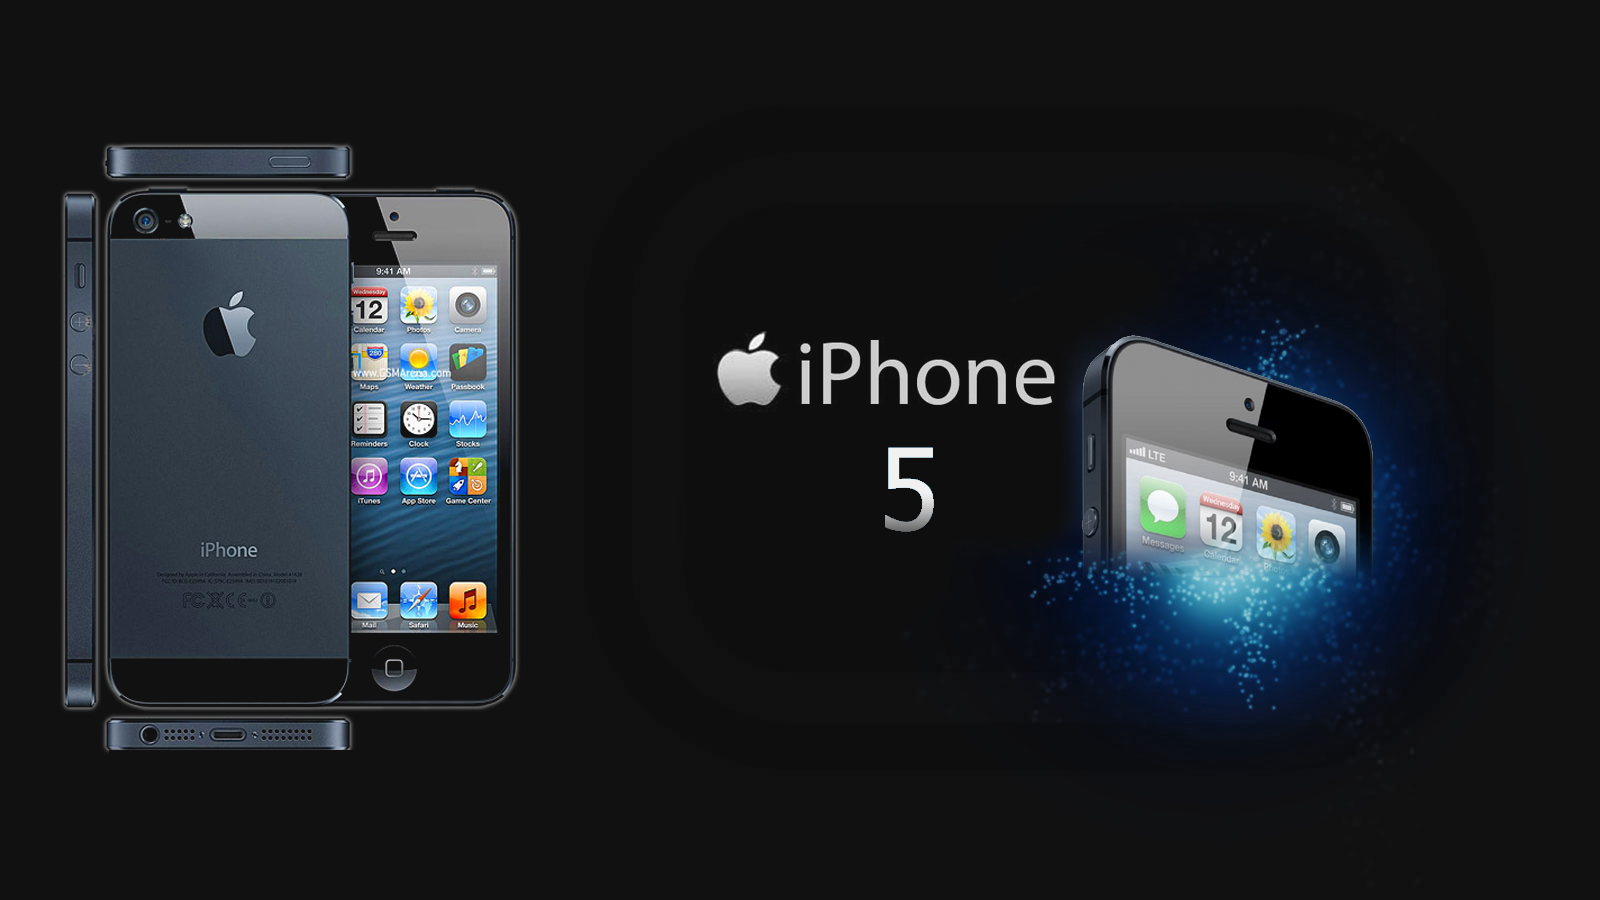 sfondi apple iphone 5s hd,smartphone,aggeggio,i phone,prodotto,elettronica